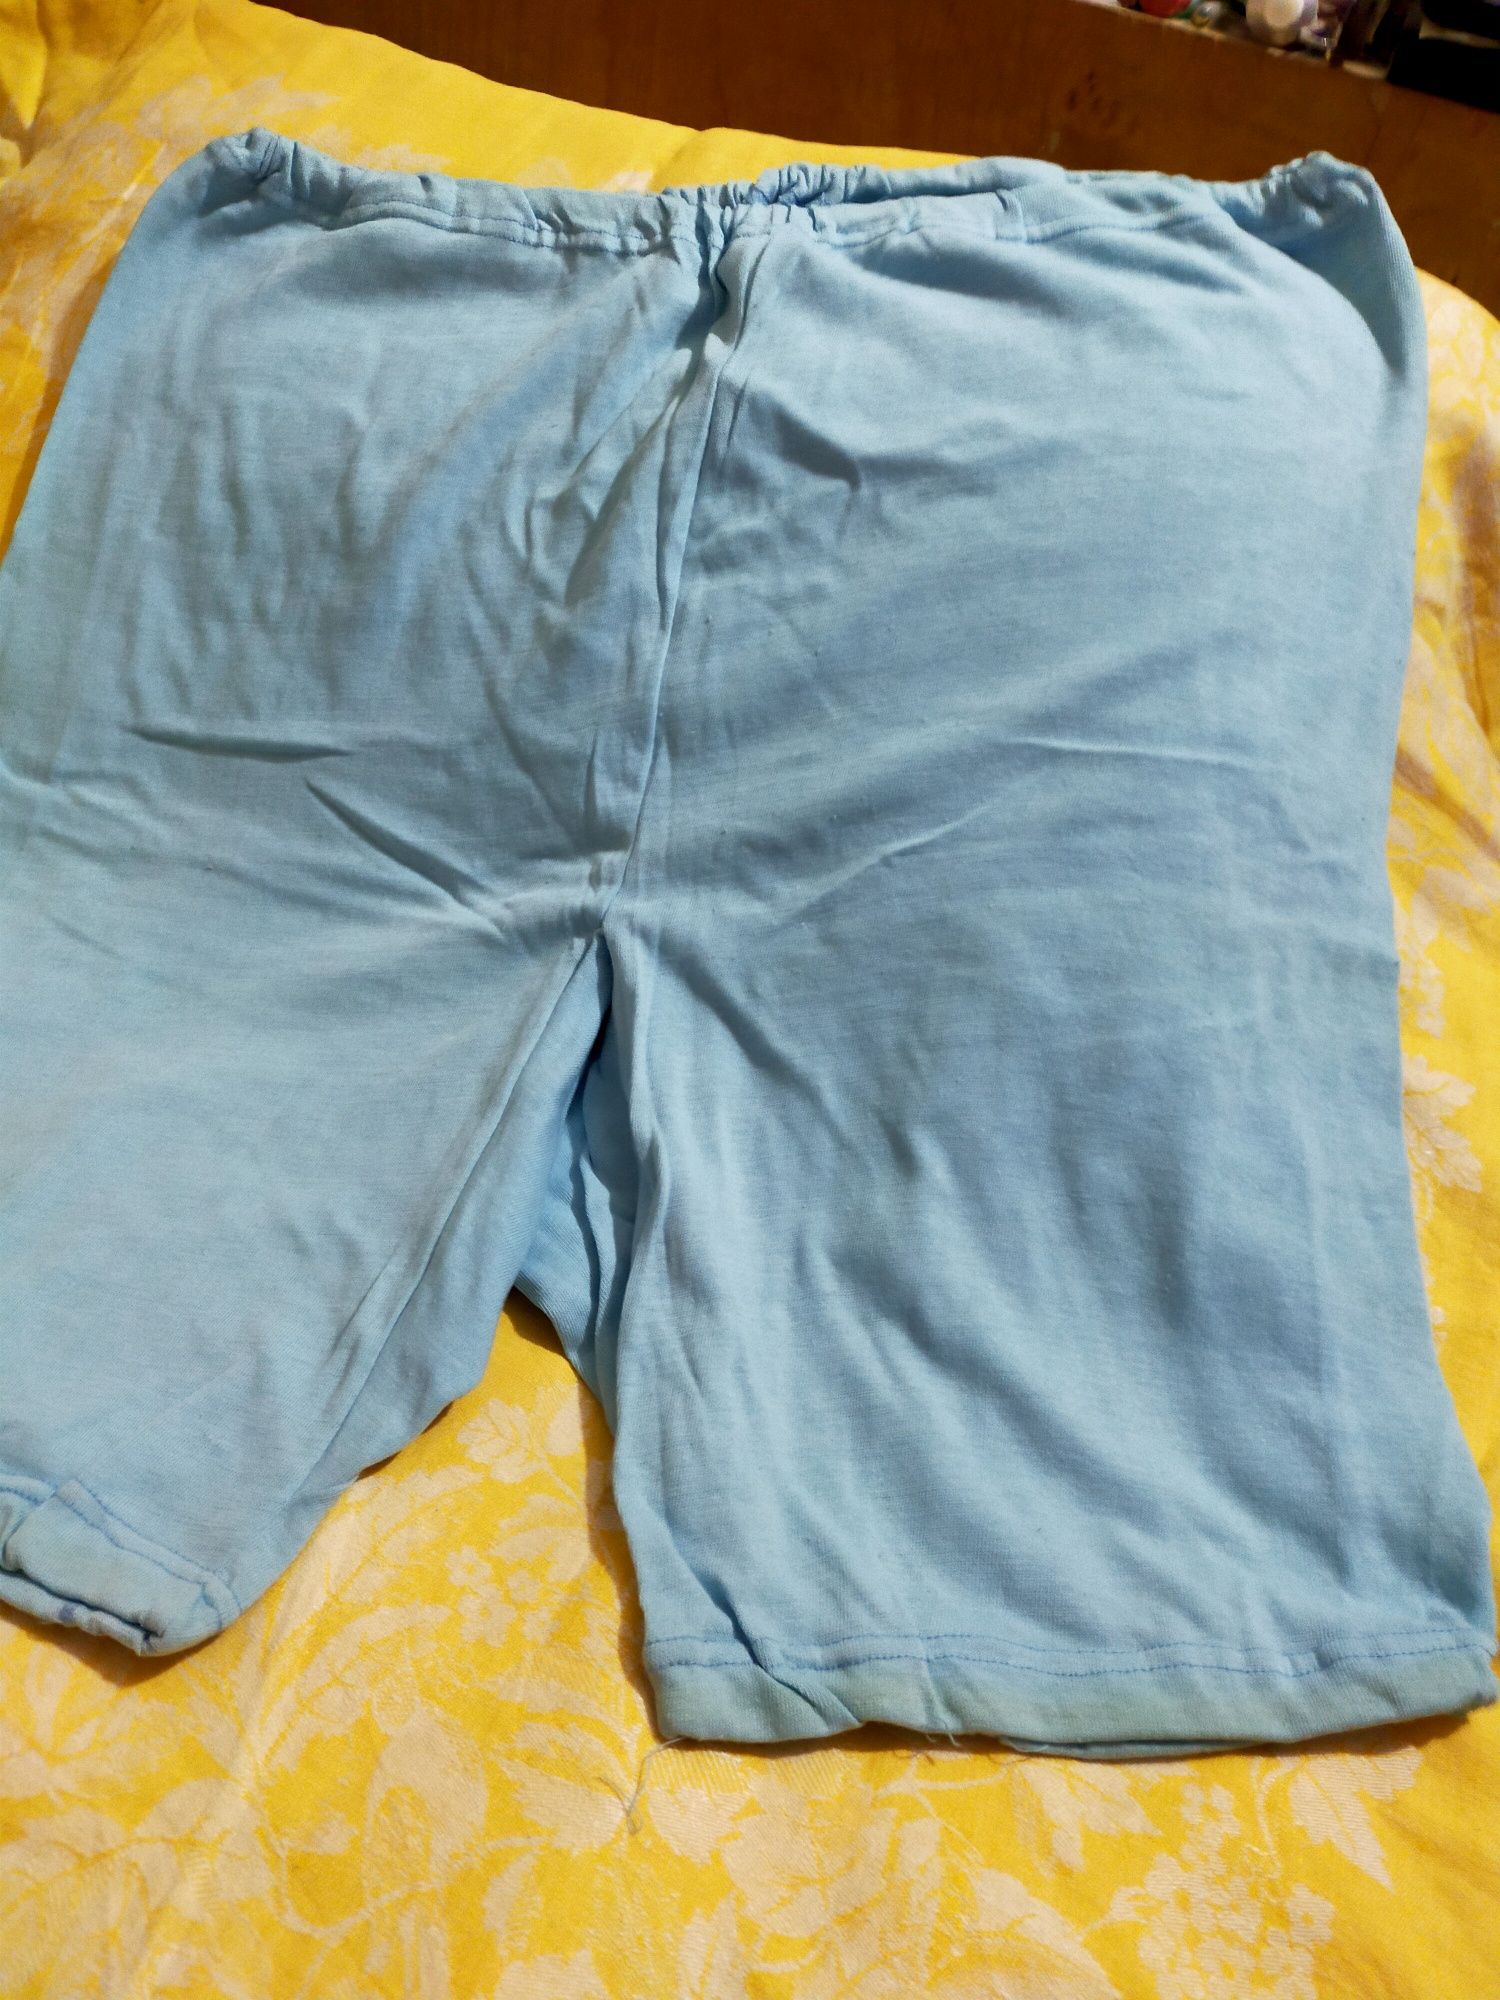 Панталоны-рейтузы новые, больших размеров 56-58, 100% хлопок